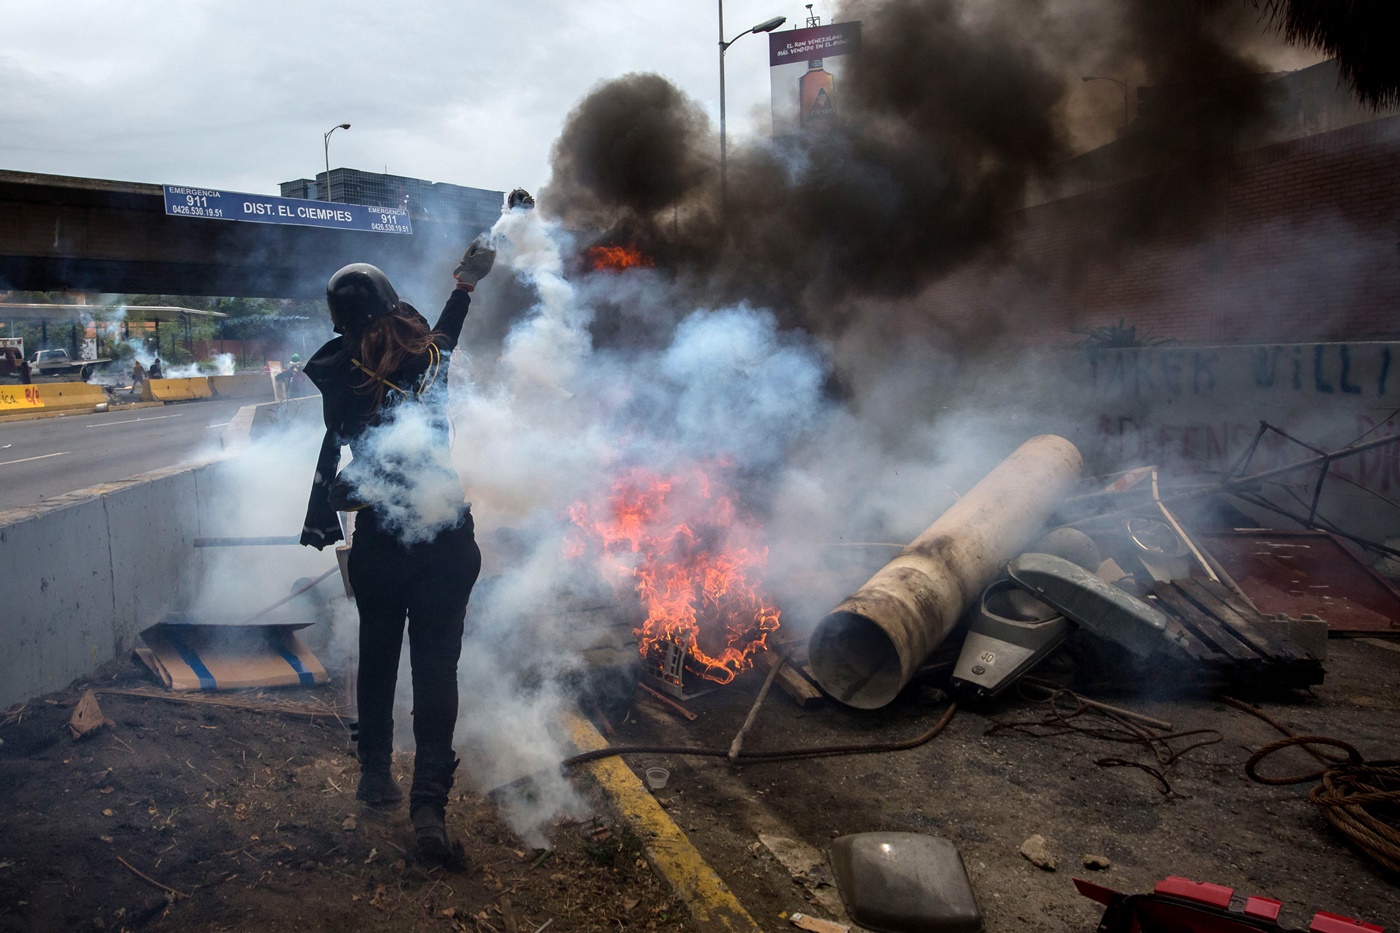 CAR028. CARACAS (VENEZUELA), 03/05/2017 - Participantes de una manifestación se enfrentan con miembros de la Guardia Bolivariana hoy, miércoles 3 de mayo de 2017, en Caracas (Venezuela). La Guardia Nacional Bolivariana (GNB, policía militarizada) de Venezuela dispersó hoy con gases lacrimógenos una movilización opositora en el este de Caracas que pretendía llegar hasta la sede de la Asamblea Nacional (AN, Parlamento), ubicada en el centro de la capital. EFE/MIGUEL GUTIERREZ